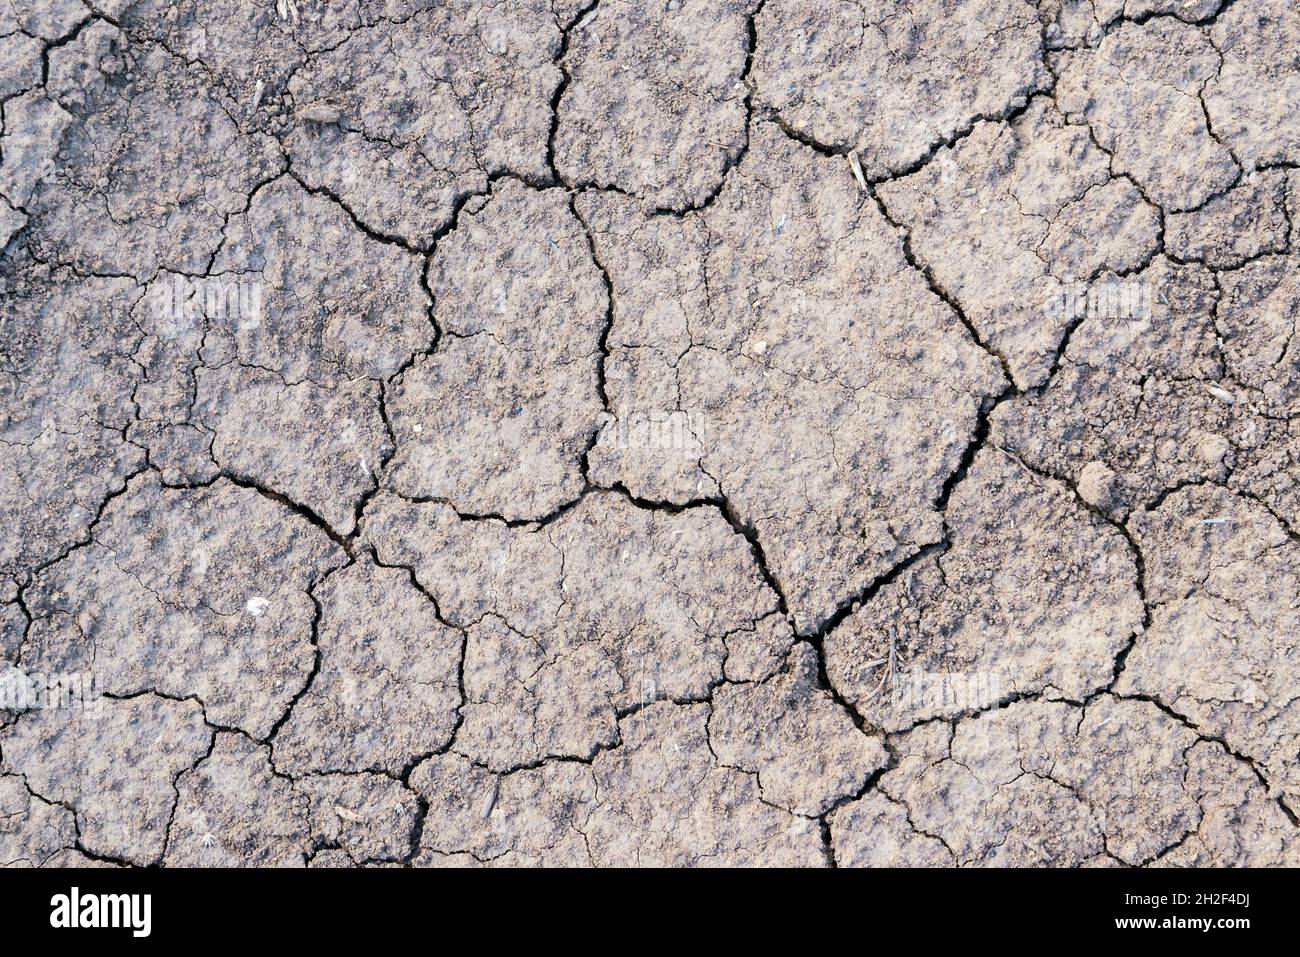 Gerissene Erde Textur des Bodens, gebrochene und raue Oberfläche grauen Lehmboden in der Sommersaison, gerissene Erdgeschoss auf Dürre Umgebung und ho Stockfoto